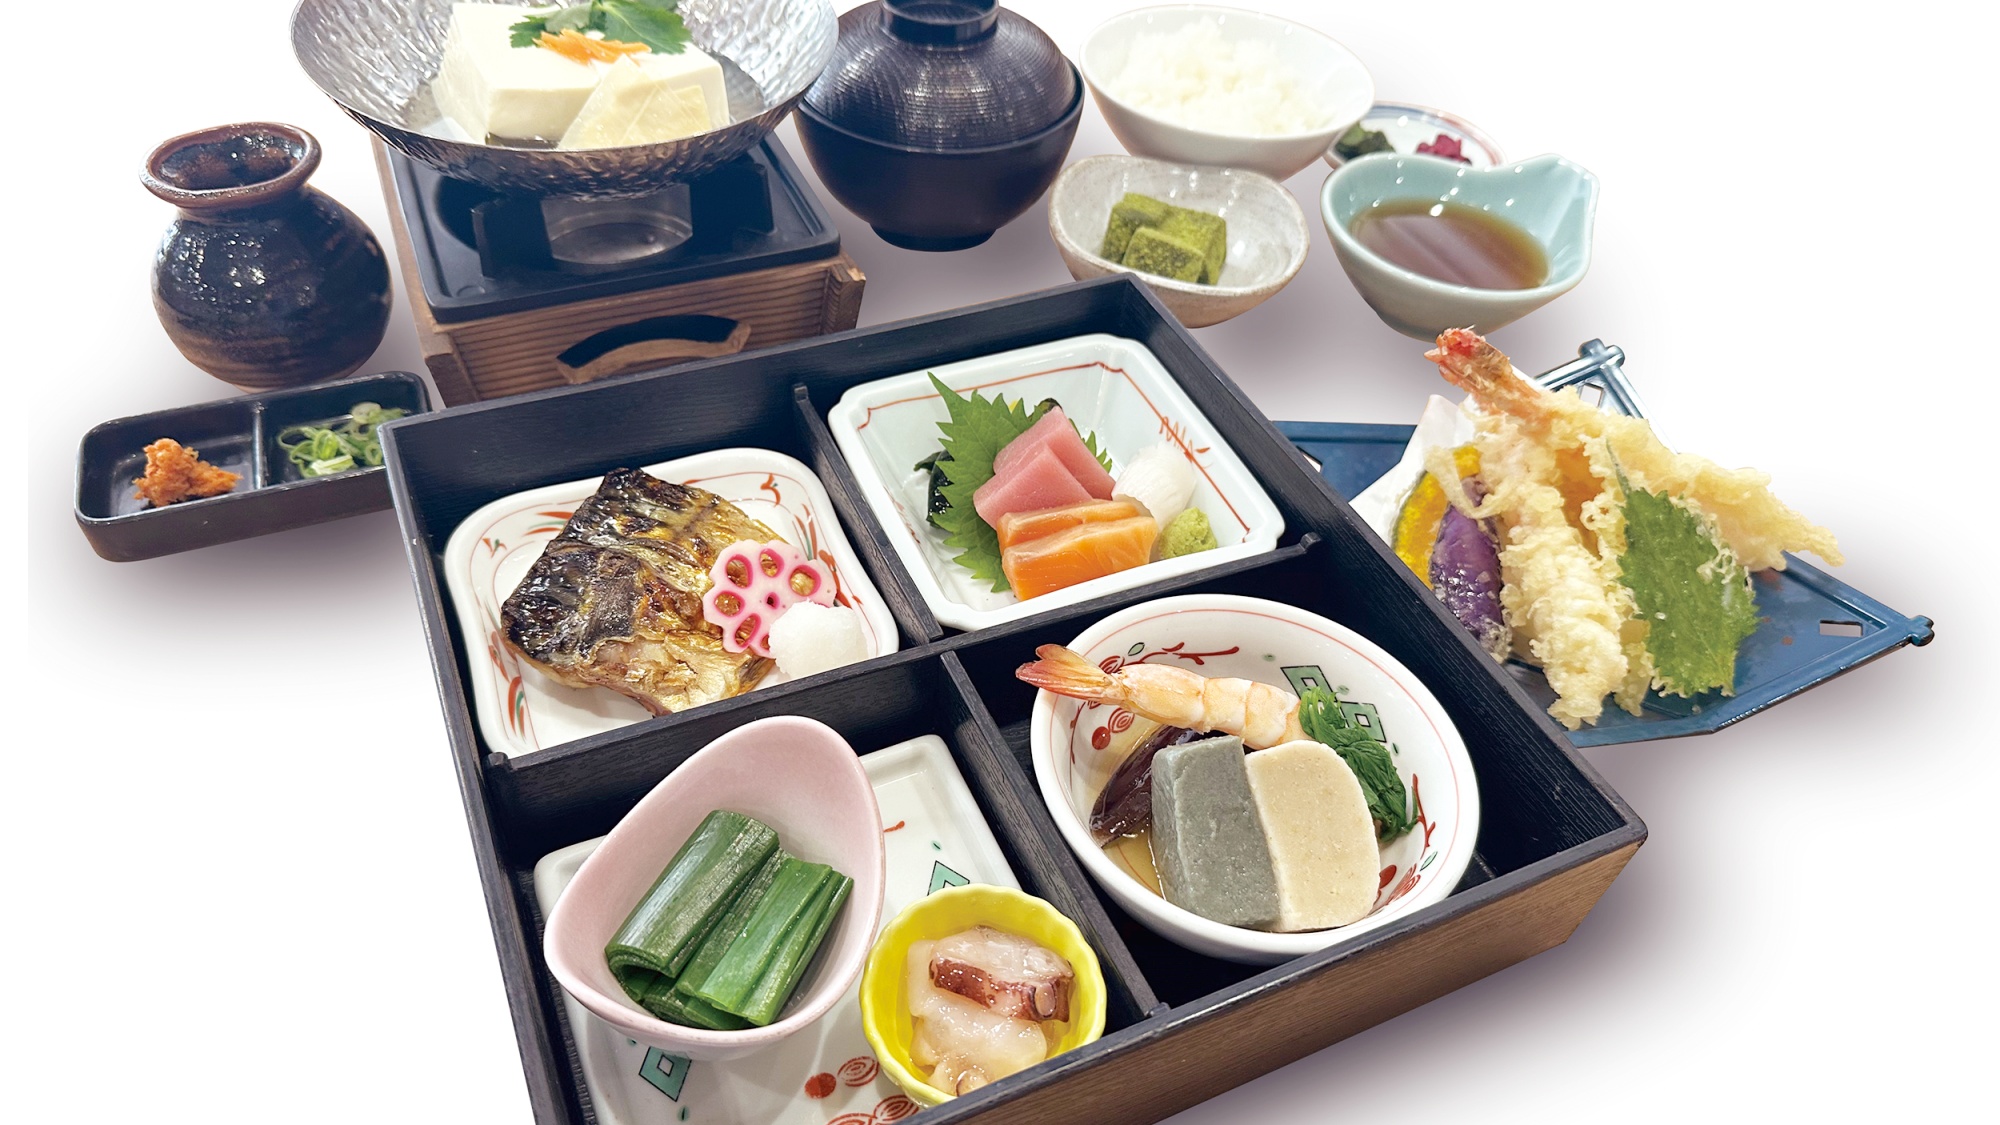 葱太郎の夕食「京雅膳」：お造り盛り、焼き物、天ぷら、小鉢、ご飯、汁物、香物、水物